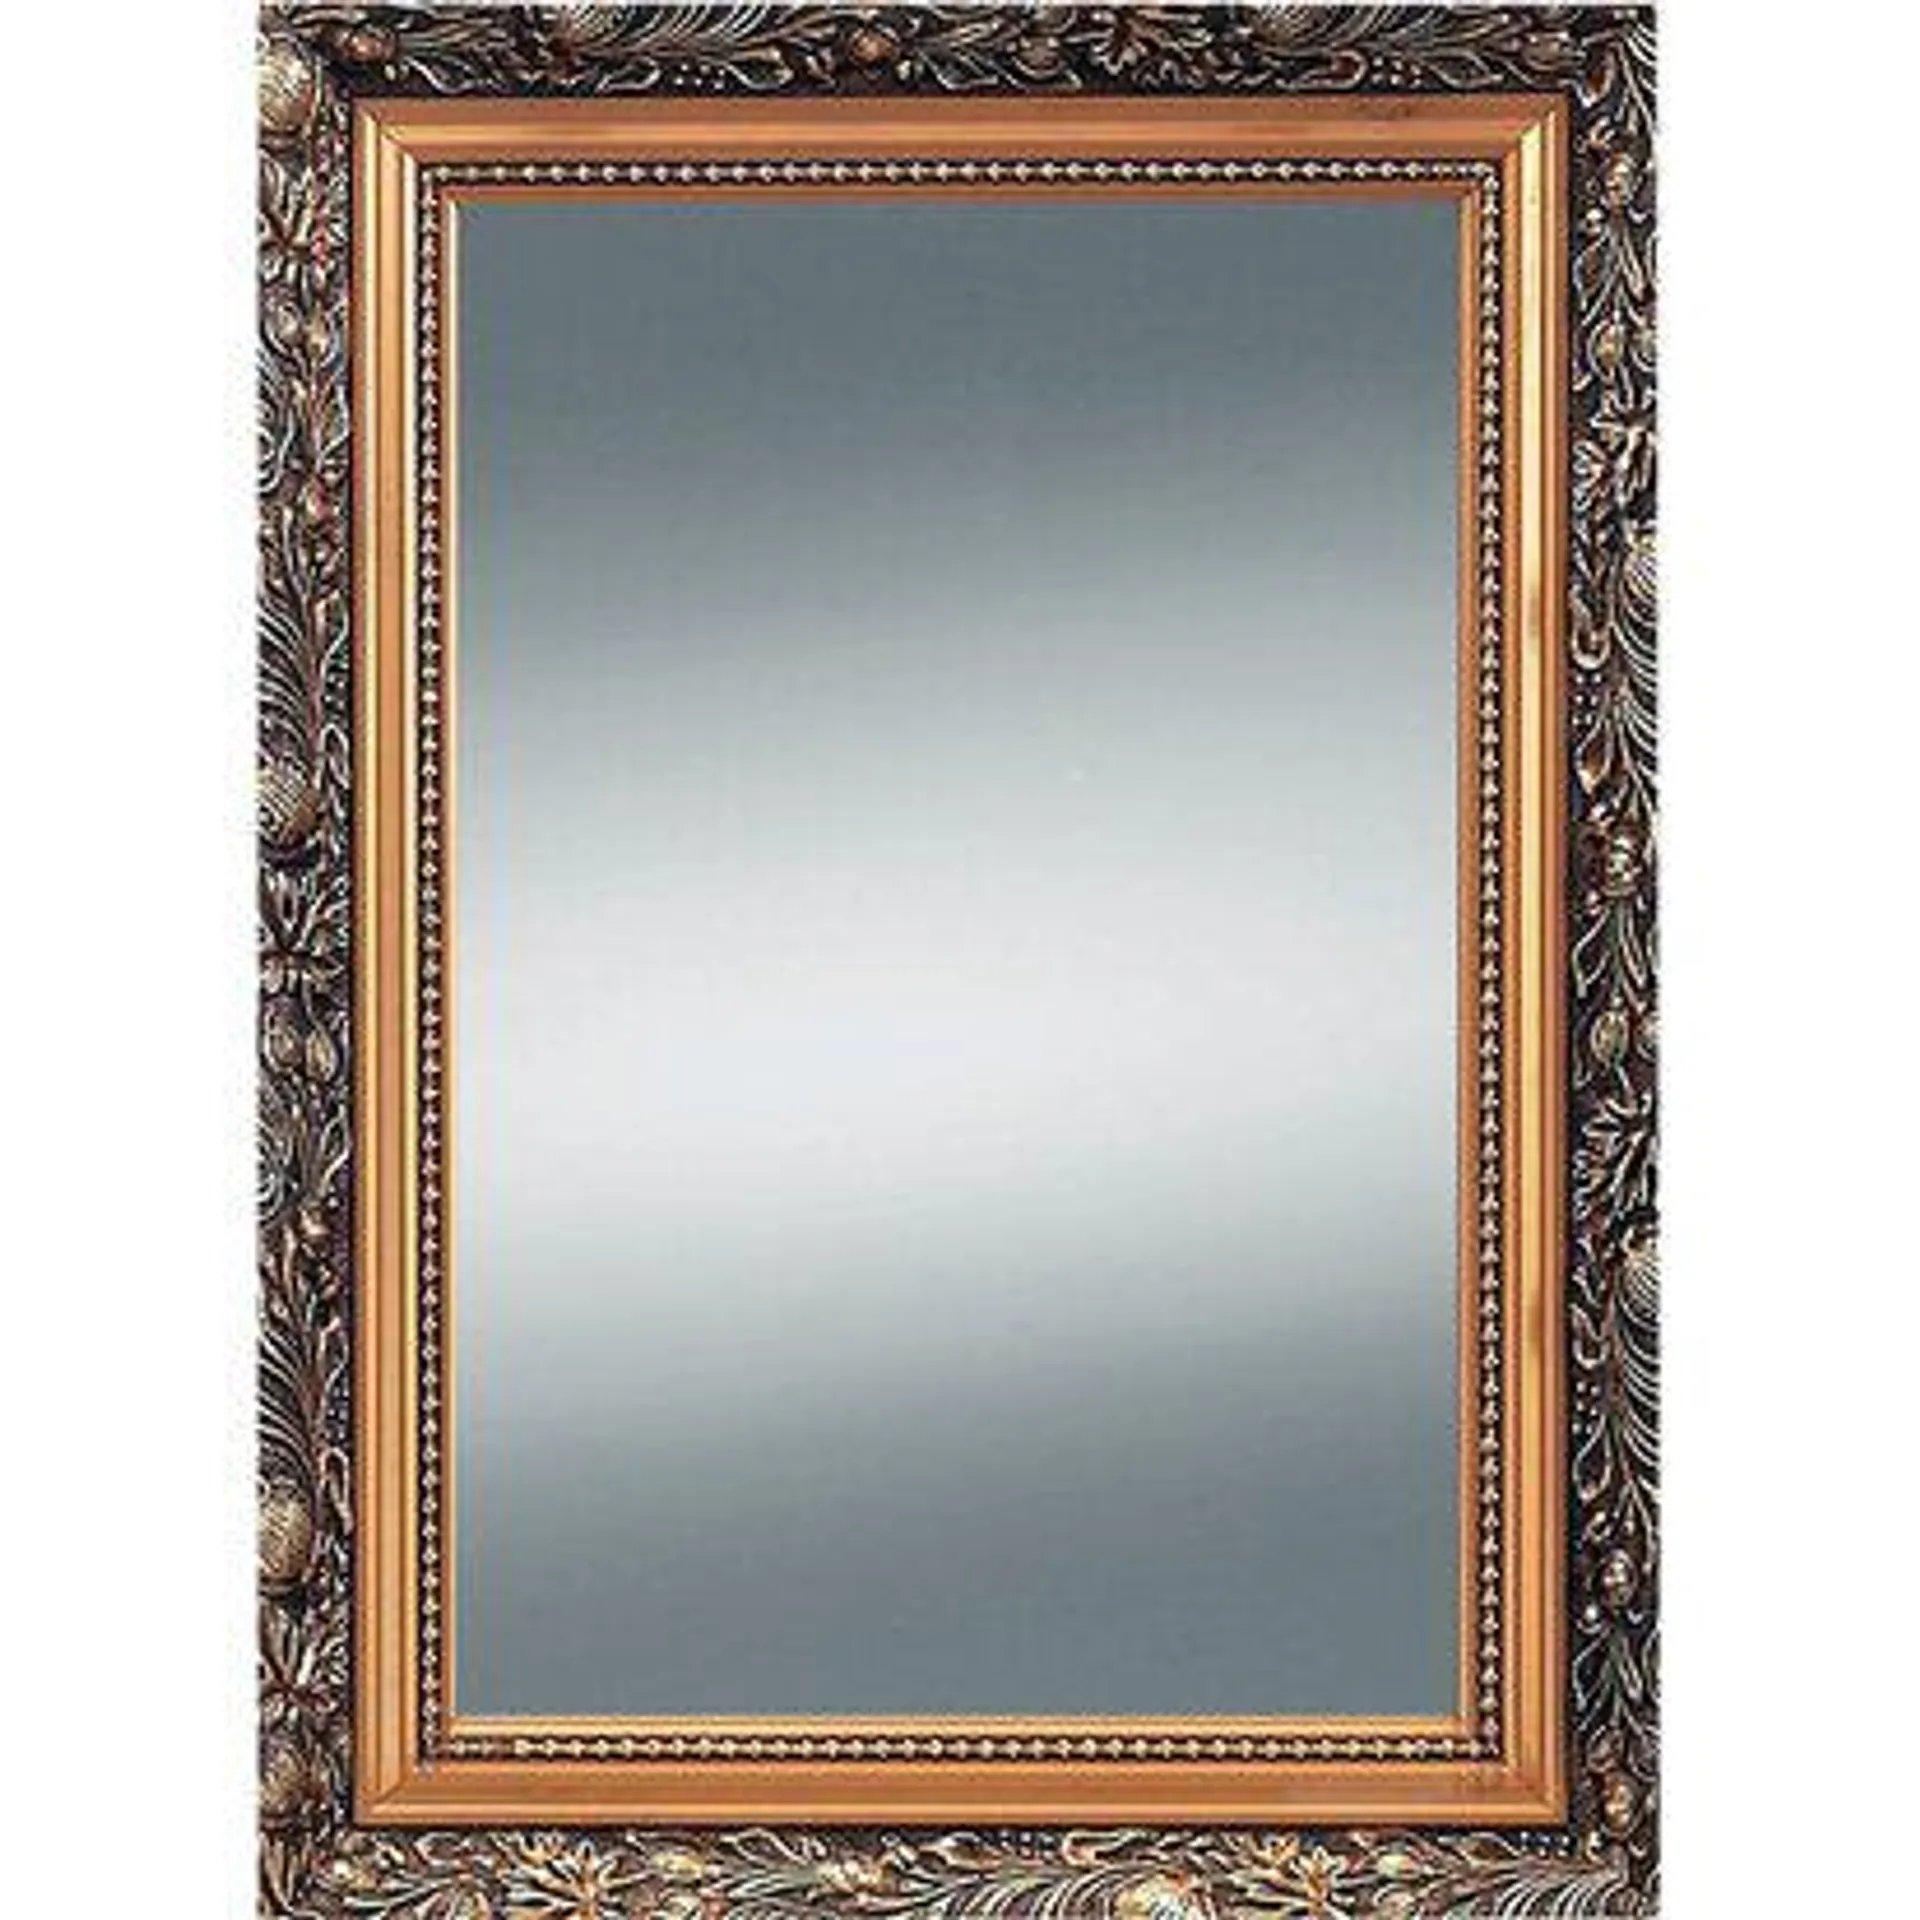 Kristall-Form Zrcadlo Verde s dřevěným rámem, zlaté, 55 x 75 cm